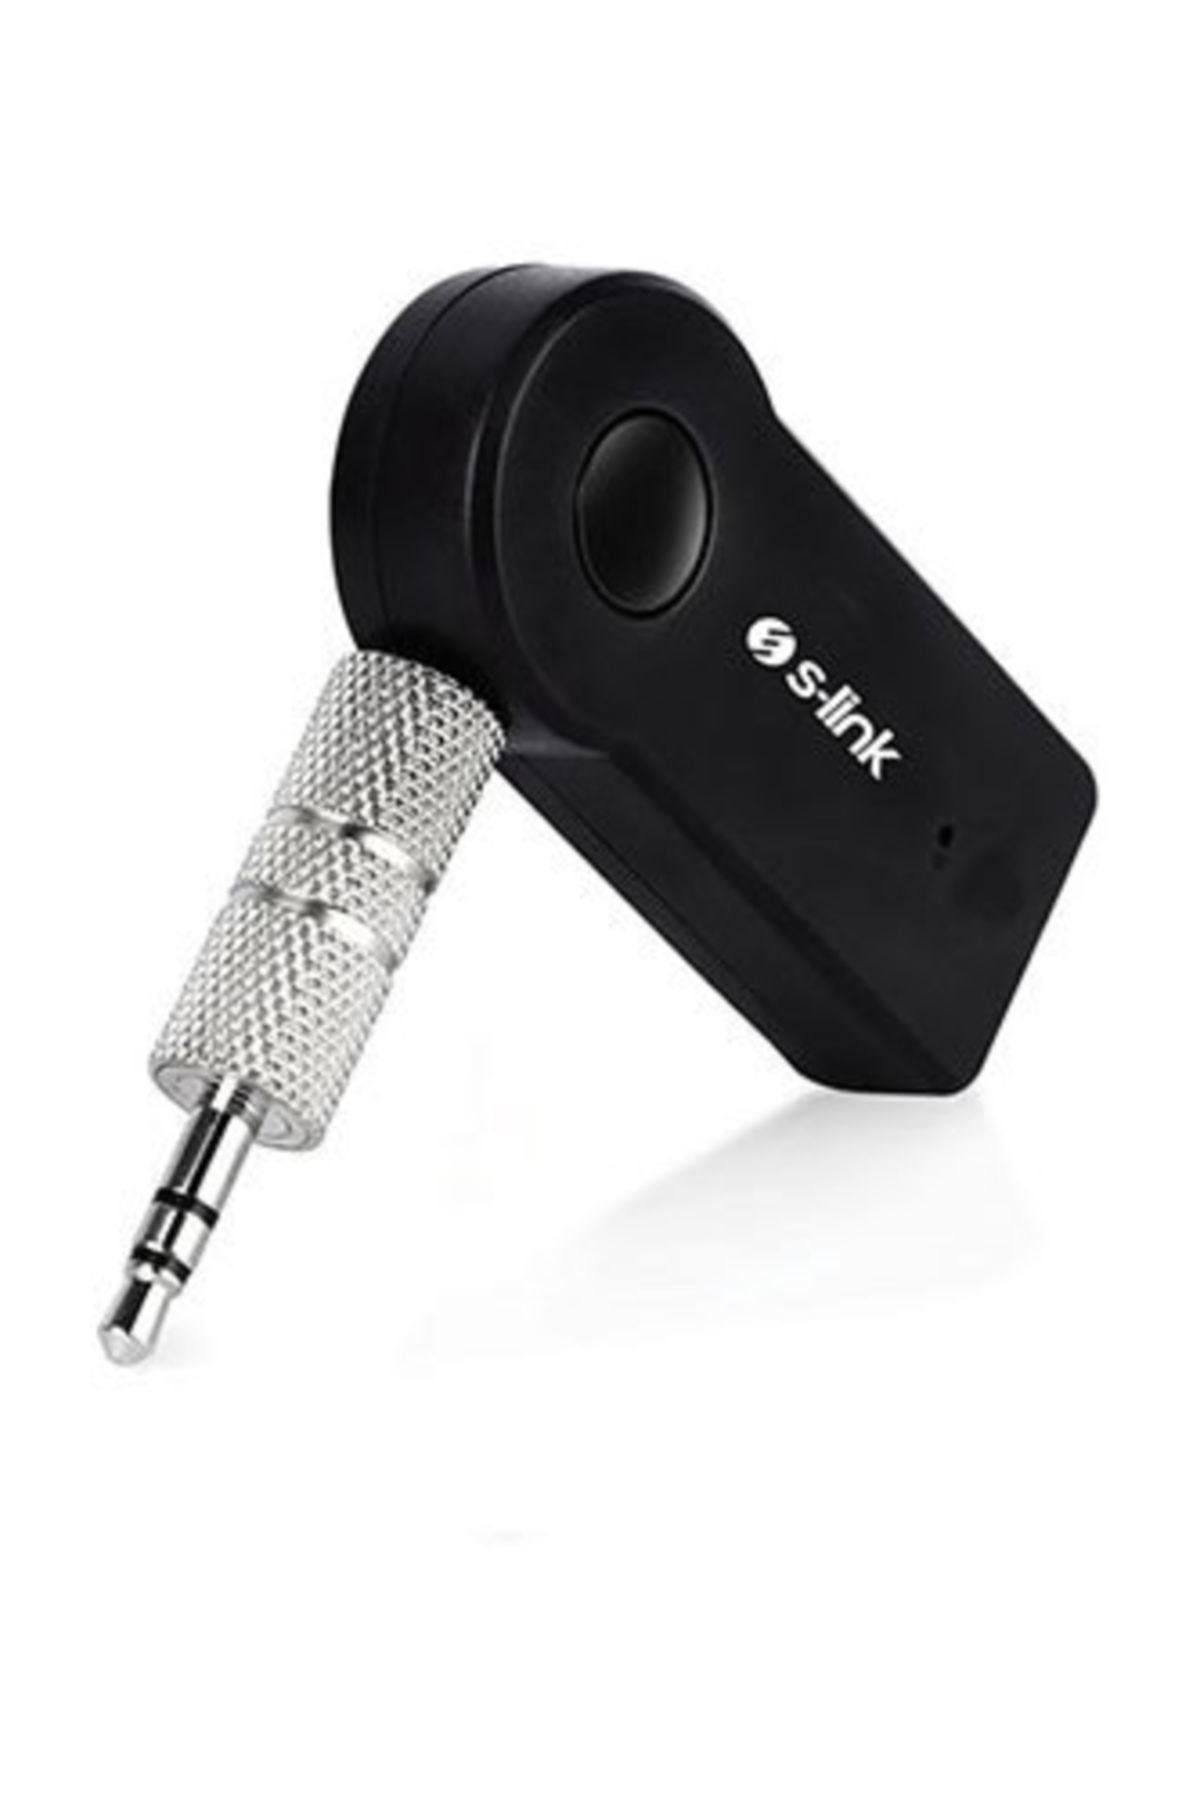 S-Link Car Bluetooth Music Receiver